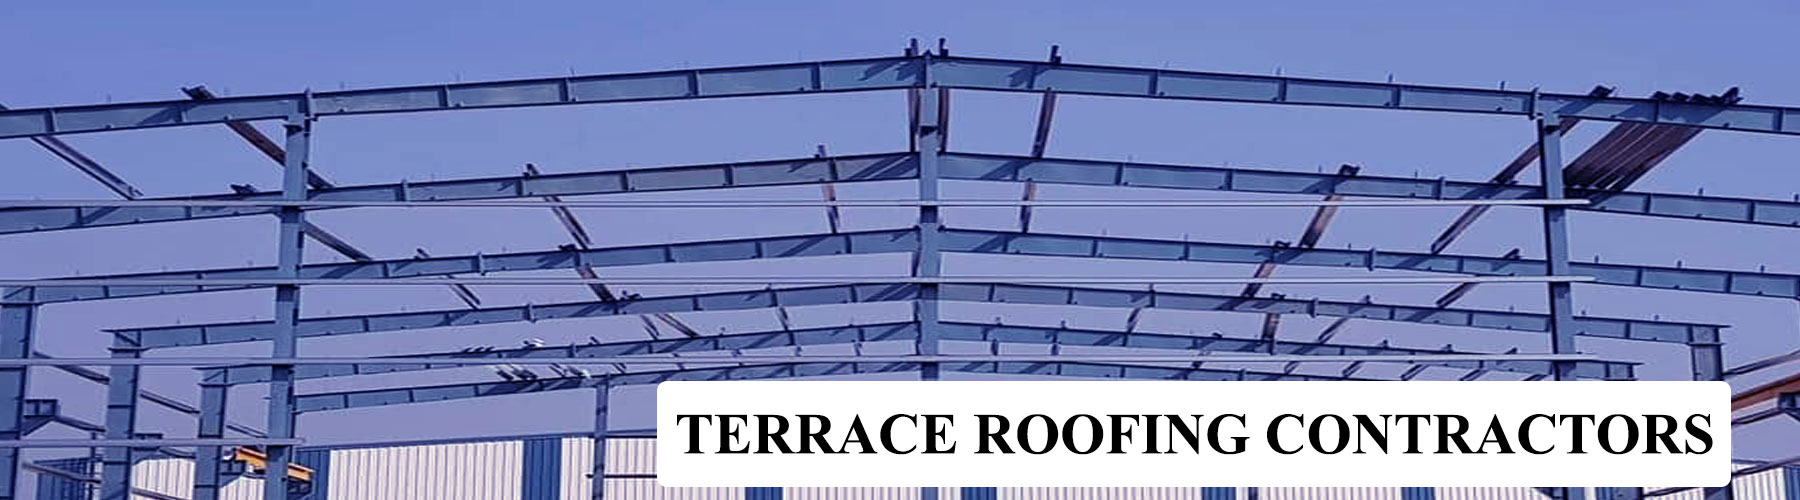 Terrace Roofing Contractors